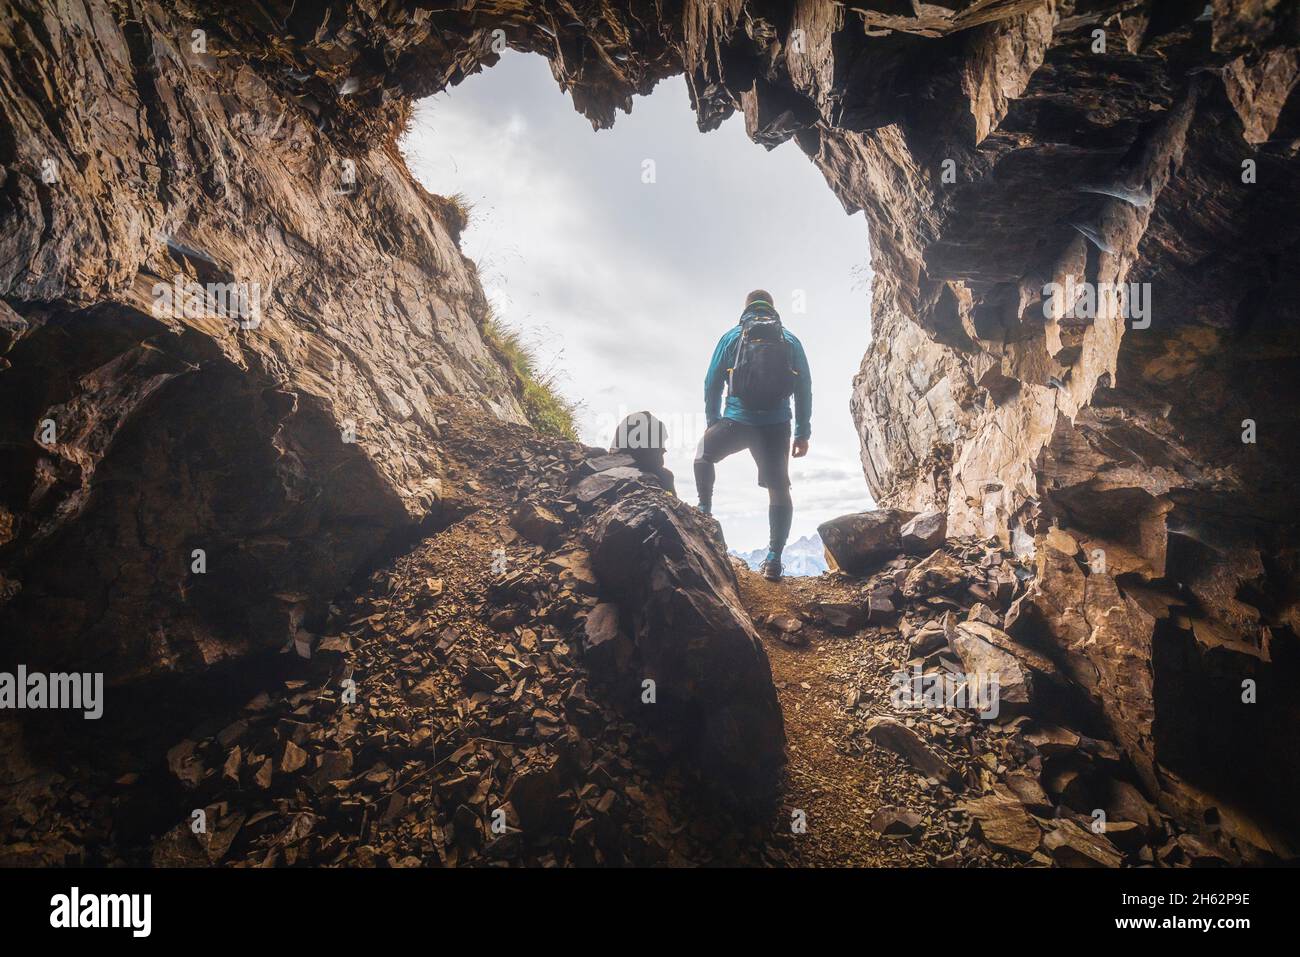 Einsamer Mann,35 - 40 Jahre alt,Wanderer im Hintergrund am Eingang zu einer Höhle in den Bergen,col di lana,dolomites,livinallongo del col di lana,belluno,veneto,italien Stockfoto